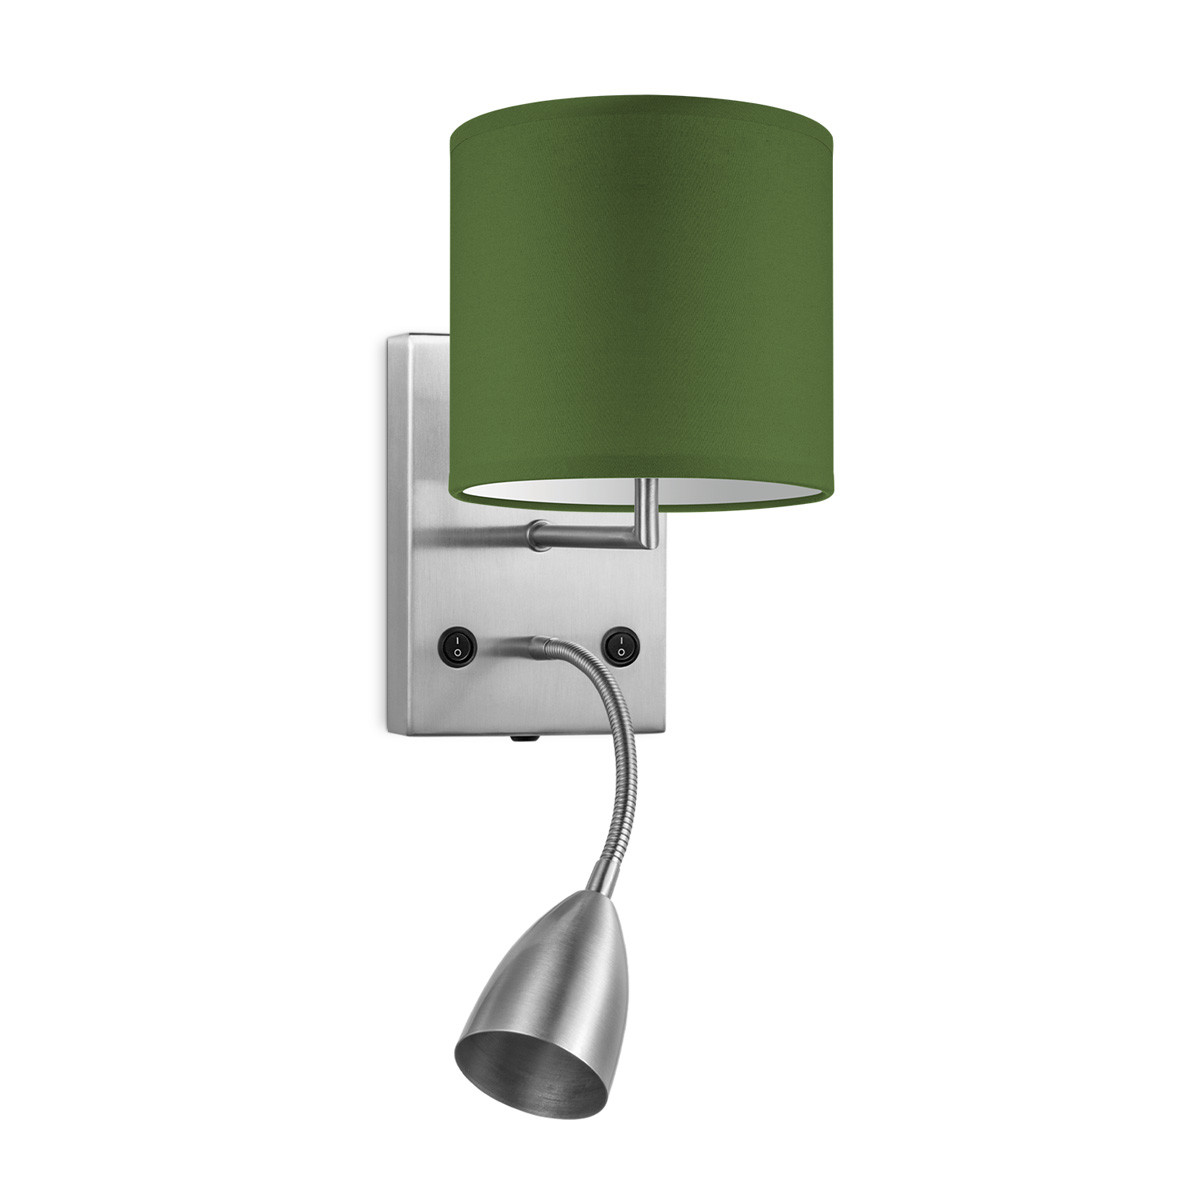 Light depot - wandlamp read bling Ø 16 cm - groen - Outlet